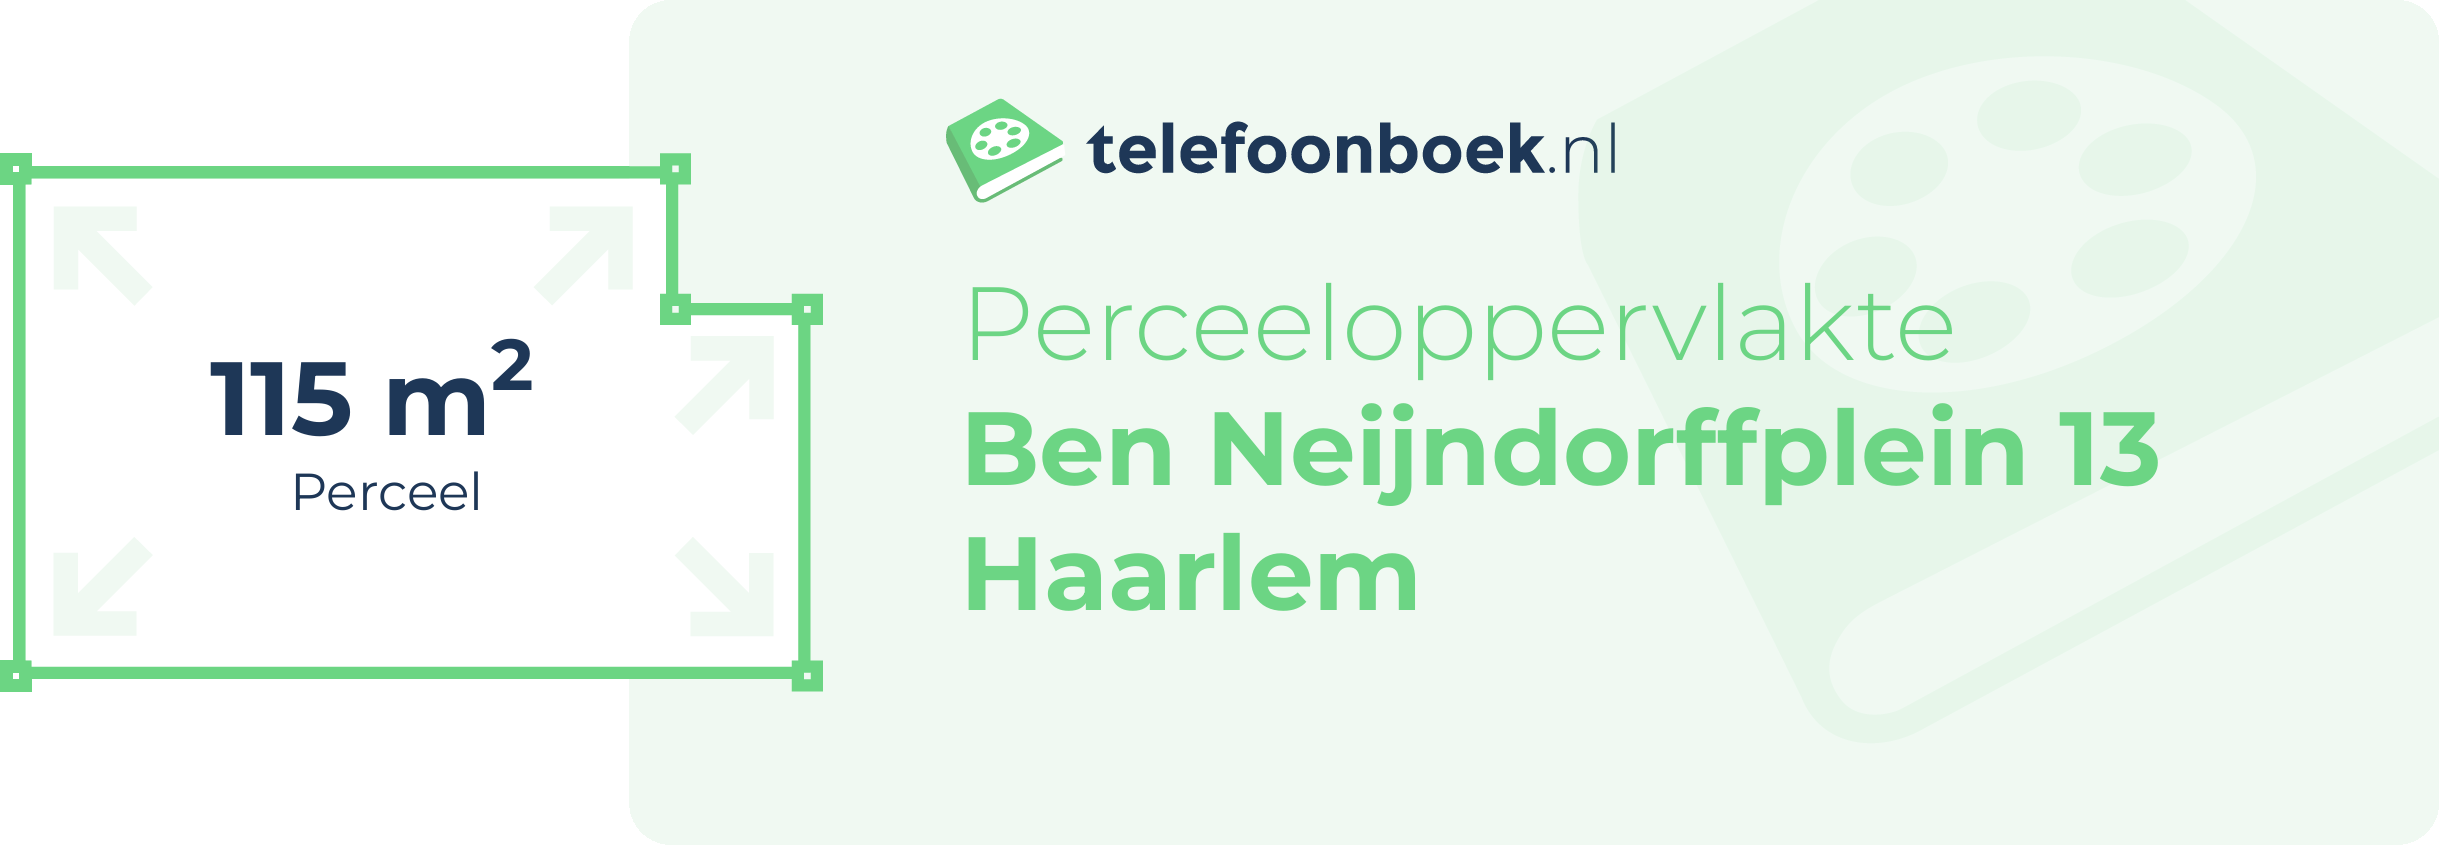 Perceeloppervlakte Ben Neijndorffplein 13 Haarlem